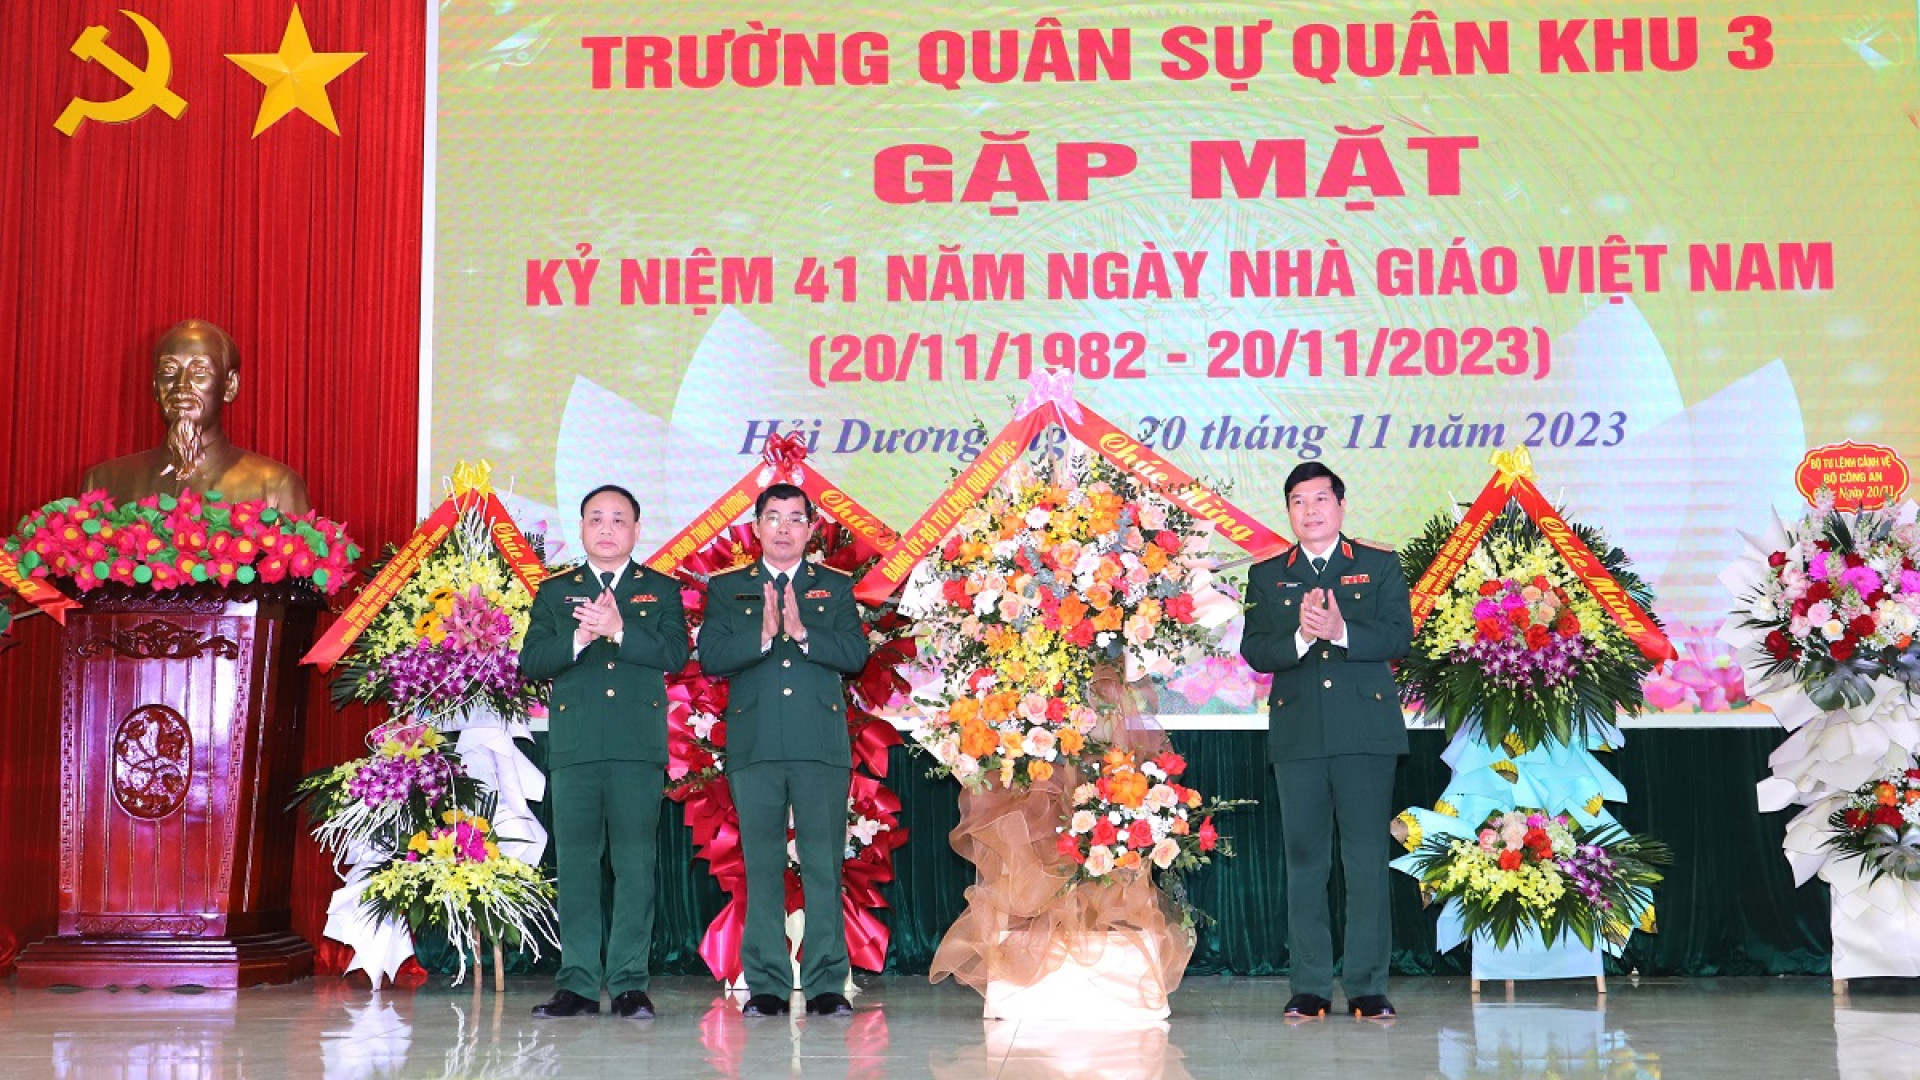 Trường Quân sự Quân khu gặp mặt kỷ niệm 41 năm Ngày nhà giáo Việt Nam